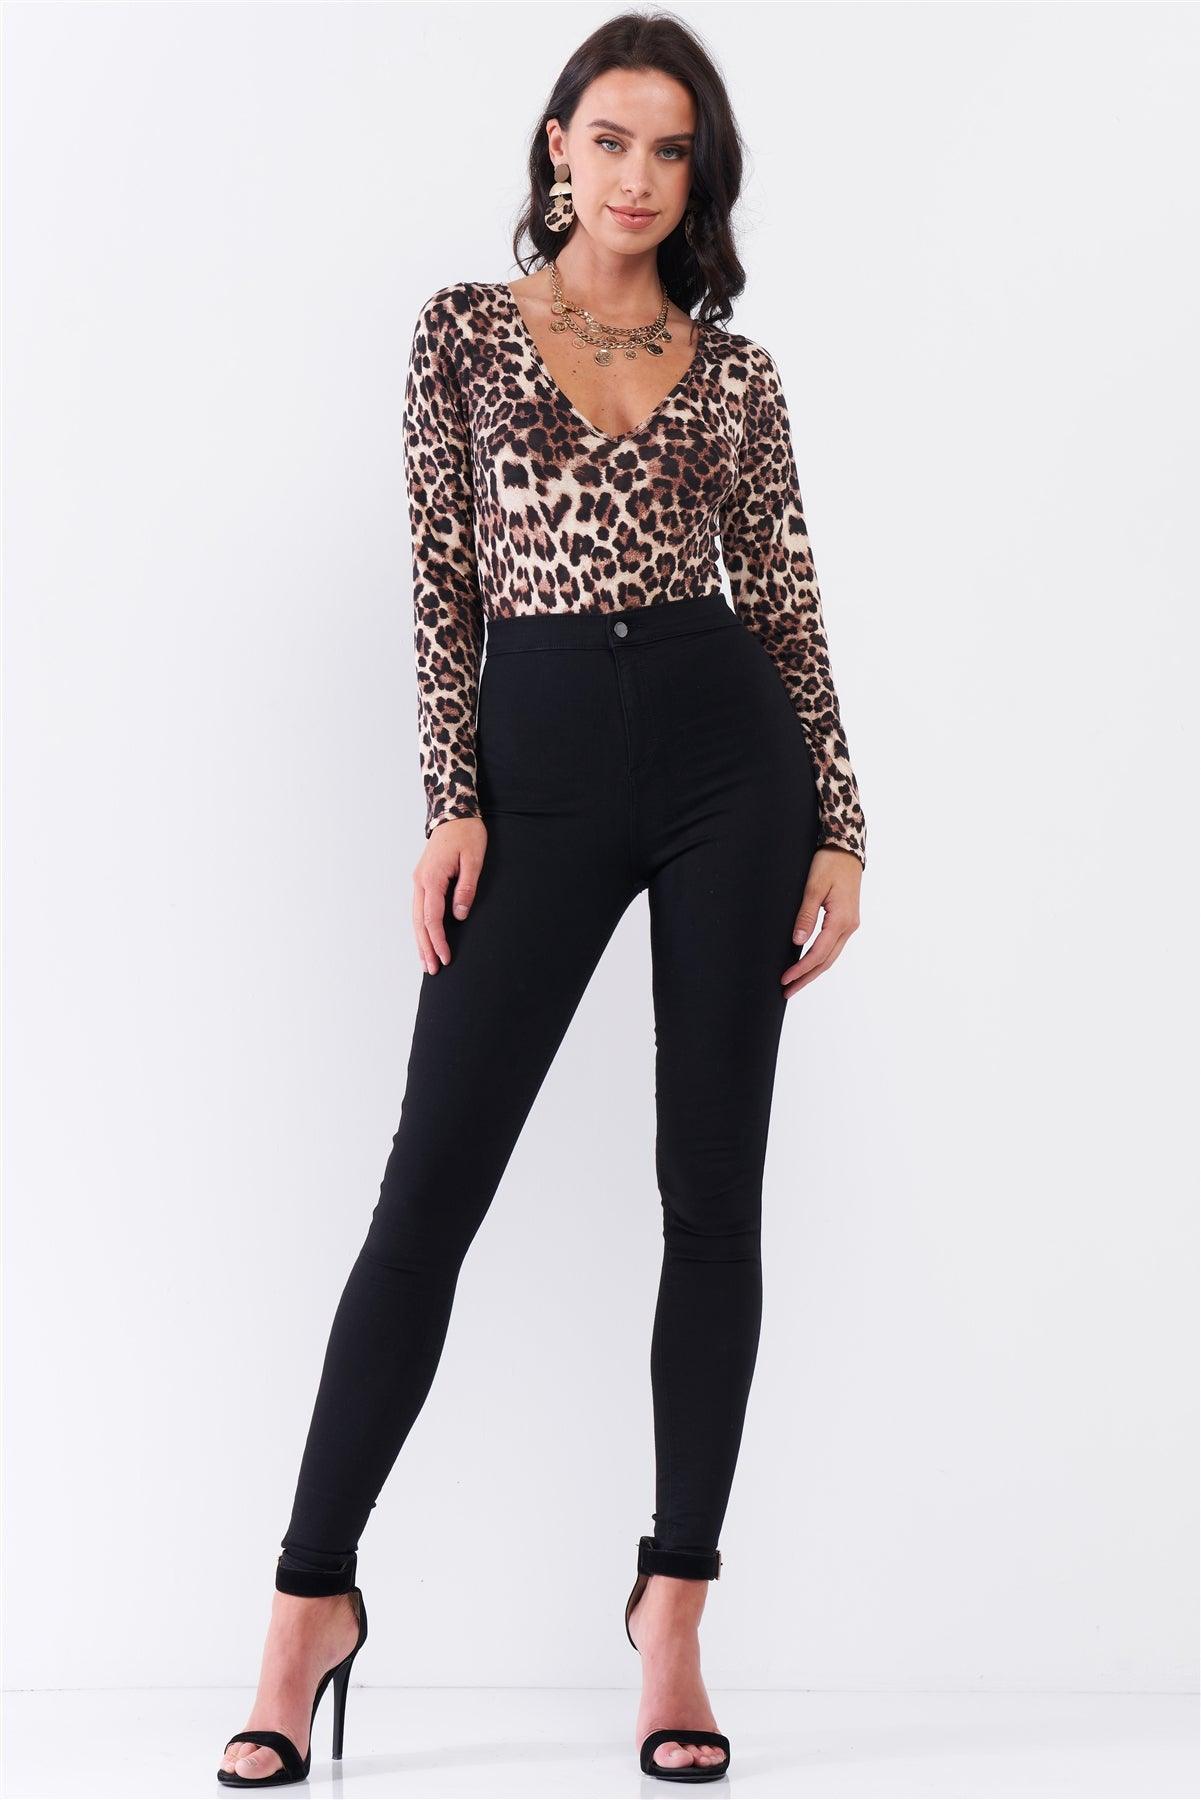 Cream & Black Leopard Print V-Neck Criss-Cross Back Detail Long Sleeve Bodysuit /3-2-1